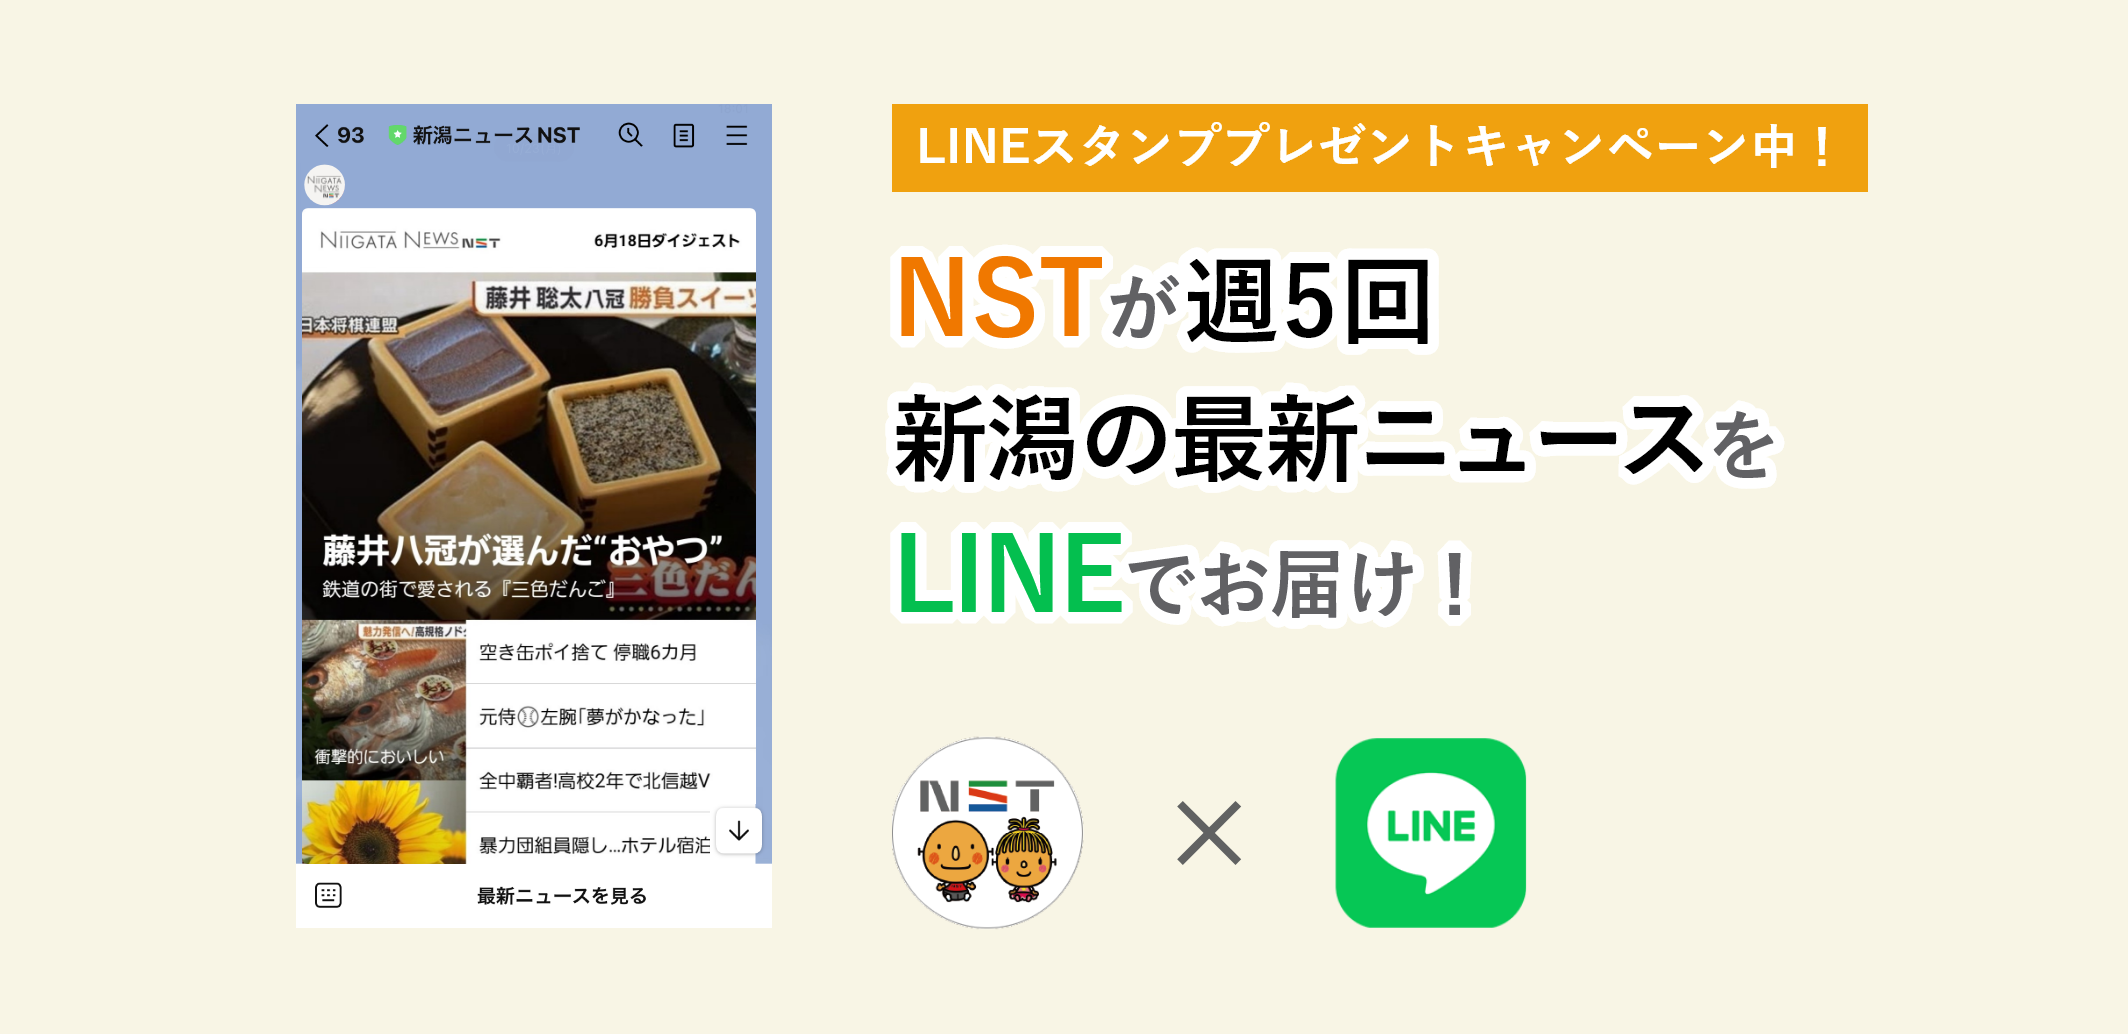 NSTが週5回 新潟の最新ニュースをLINEでお届け！